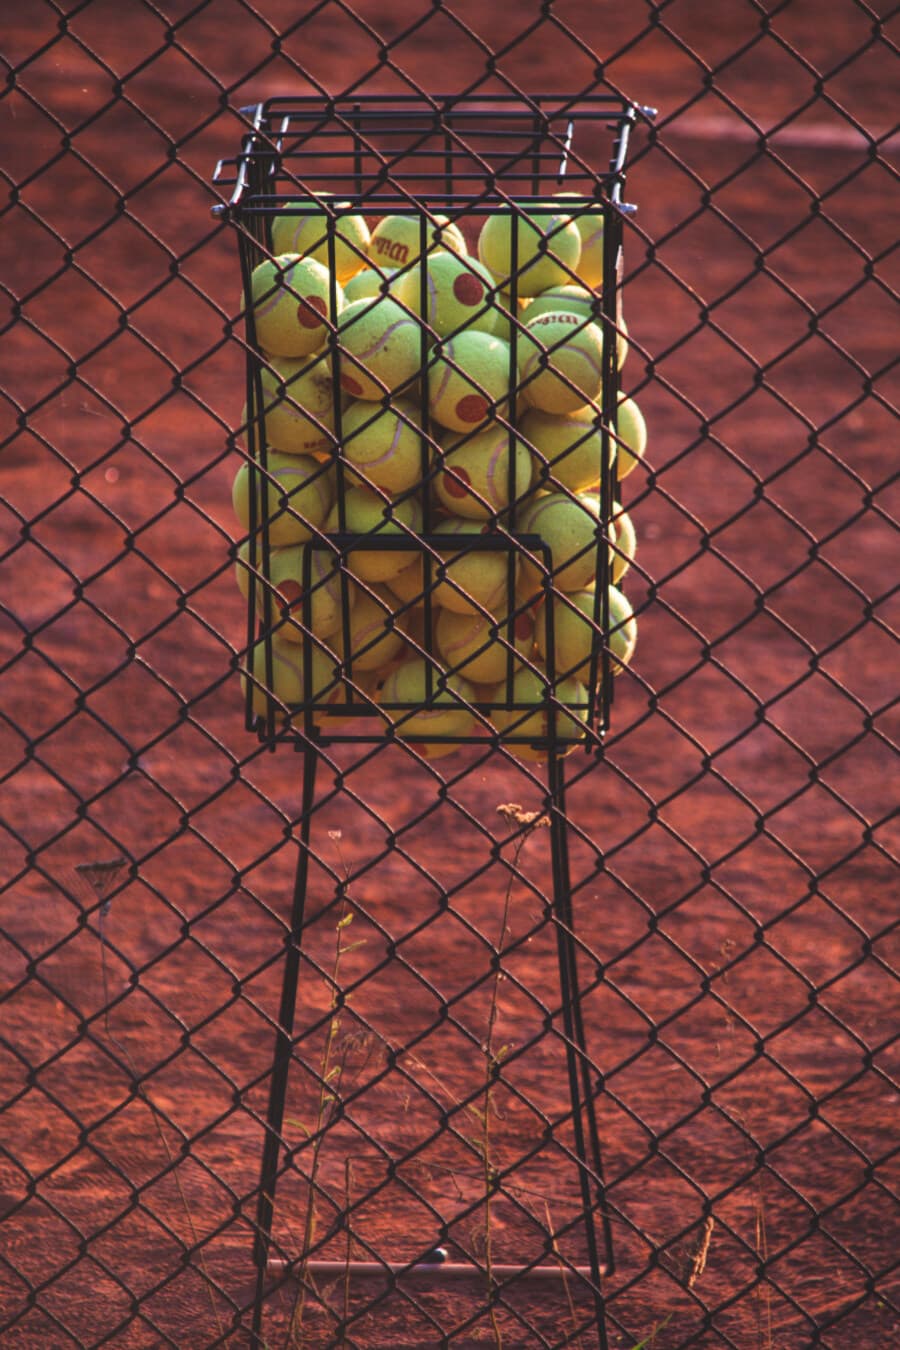 tenisz, teniszpálya, labda, halom, sok, kerítés, vas, drót, fém, verseny